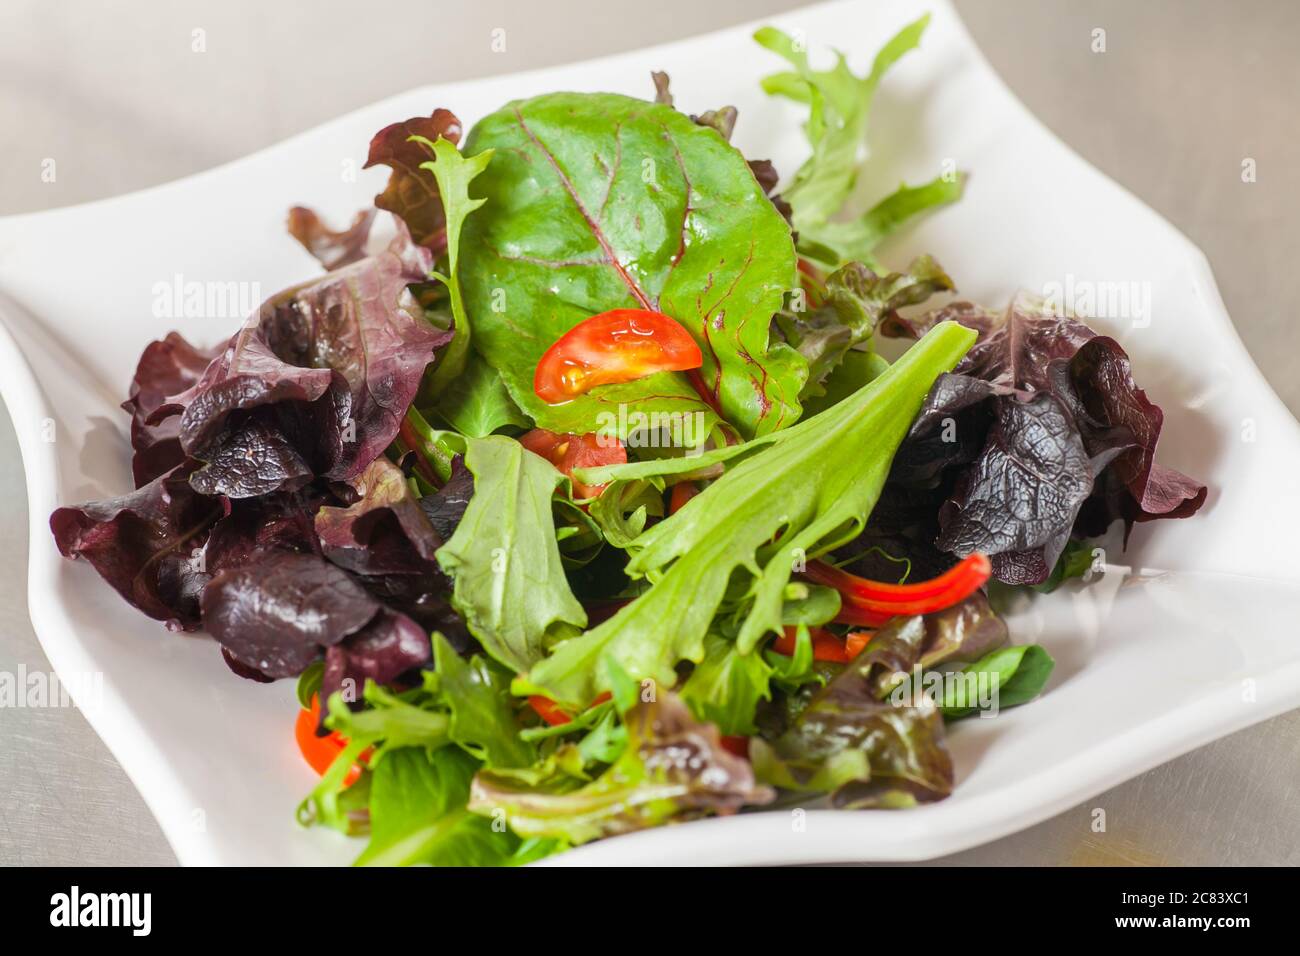 Presentazione di insalata fresca Foto Stock